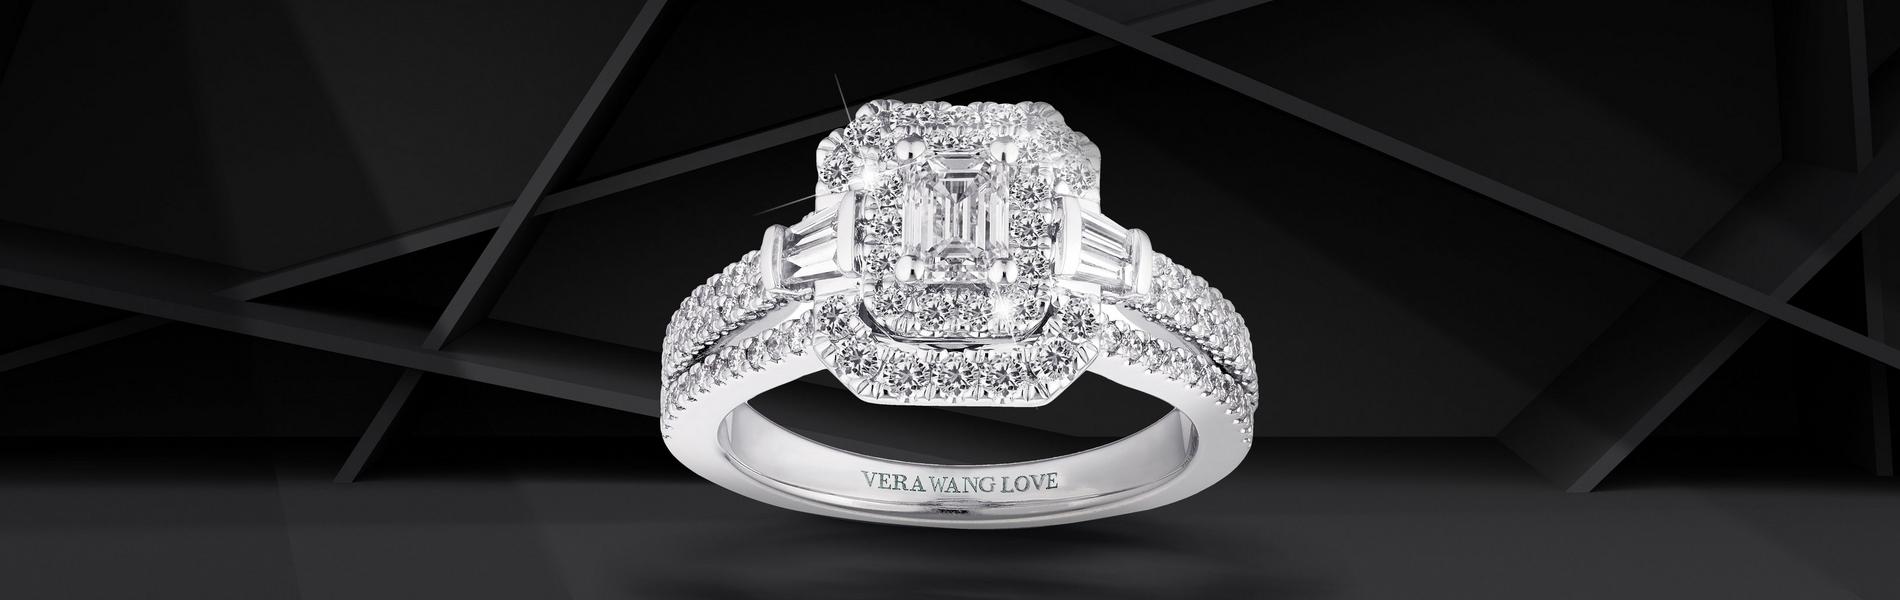 Vera Wang 18ct White Gold 1.18ct Diamond Engagement Ring